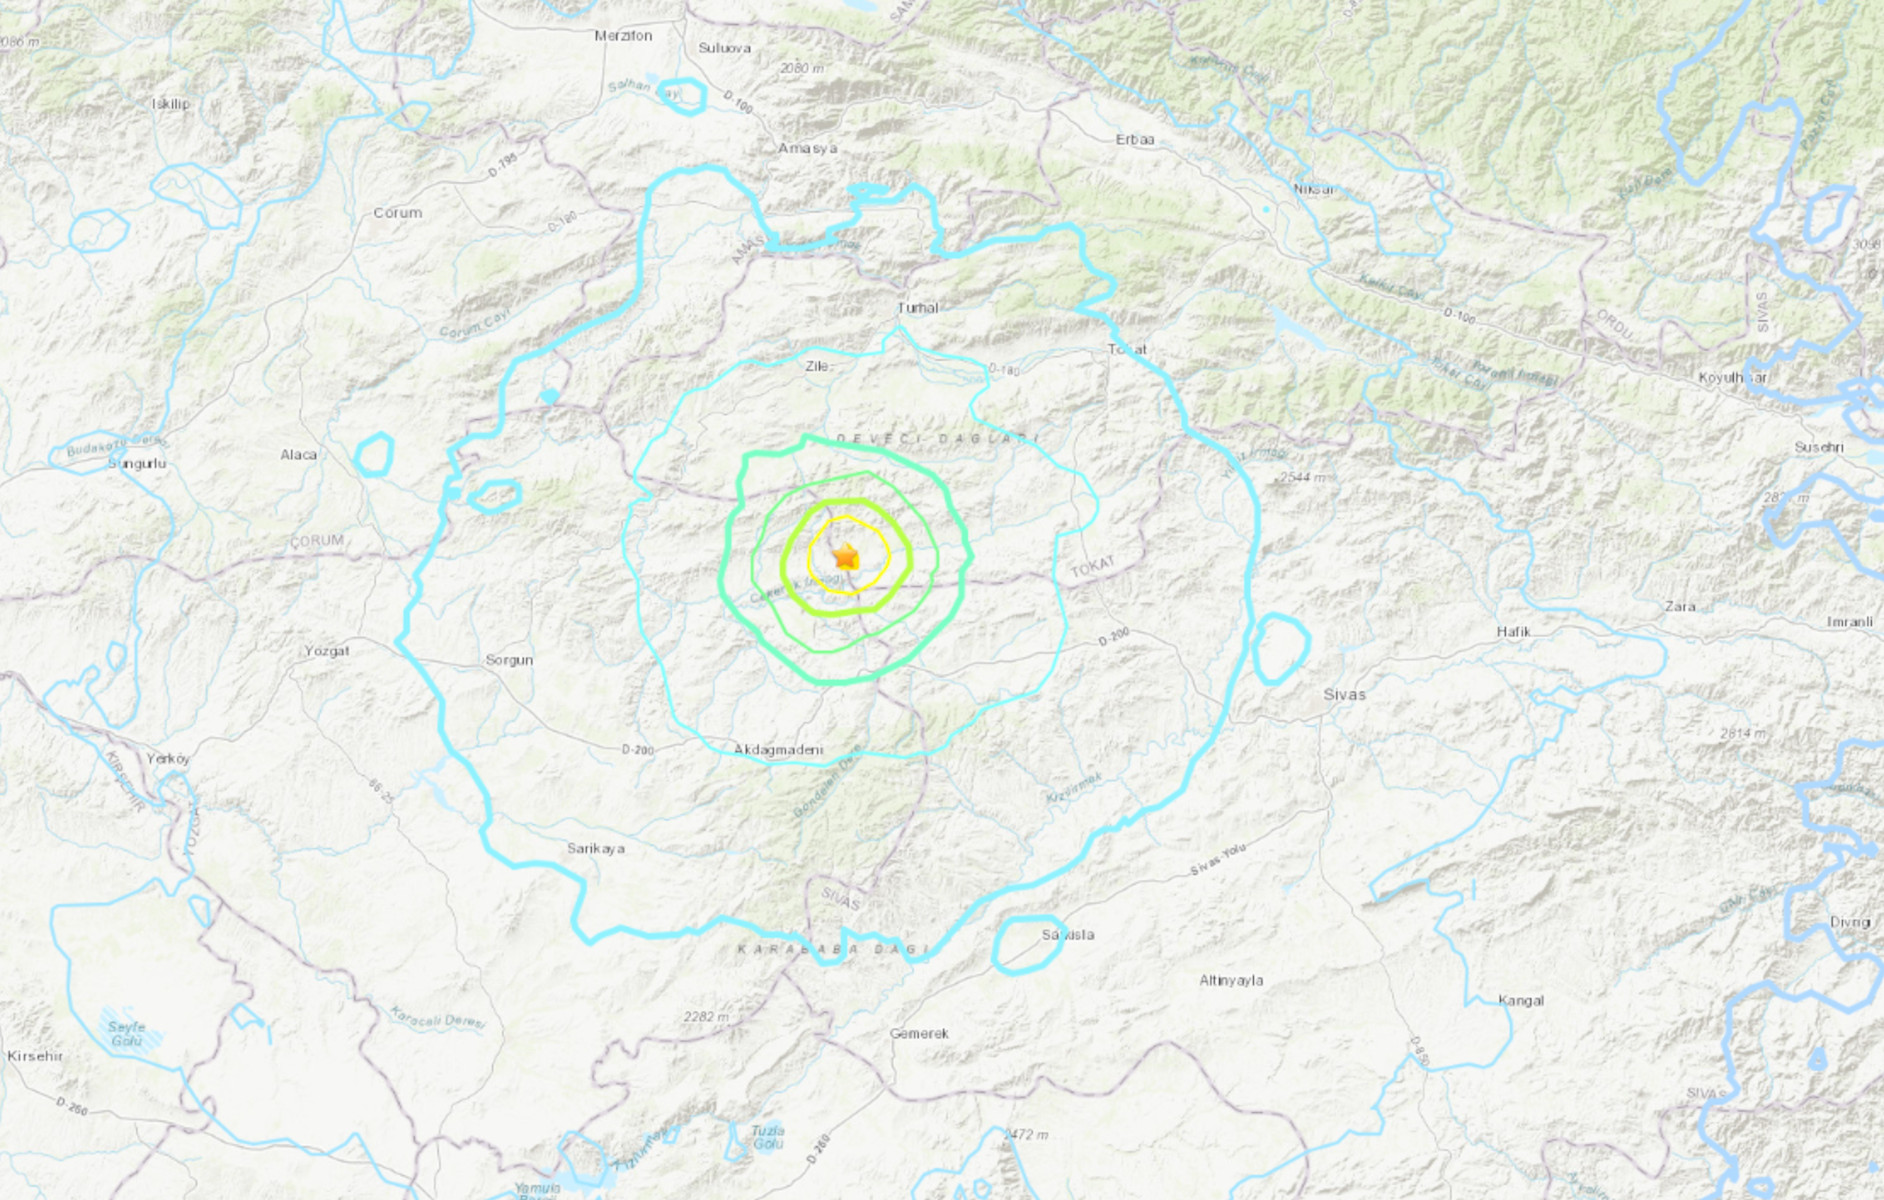 Σεισμός 5,6 Ρίχτερ στην Τουρκία – Προηγήθηκαν σεισμοί 4,1 και 4,6 Ρίχτερ